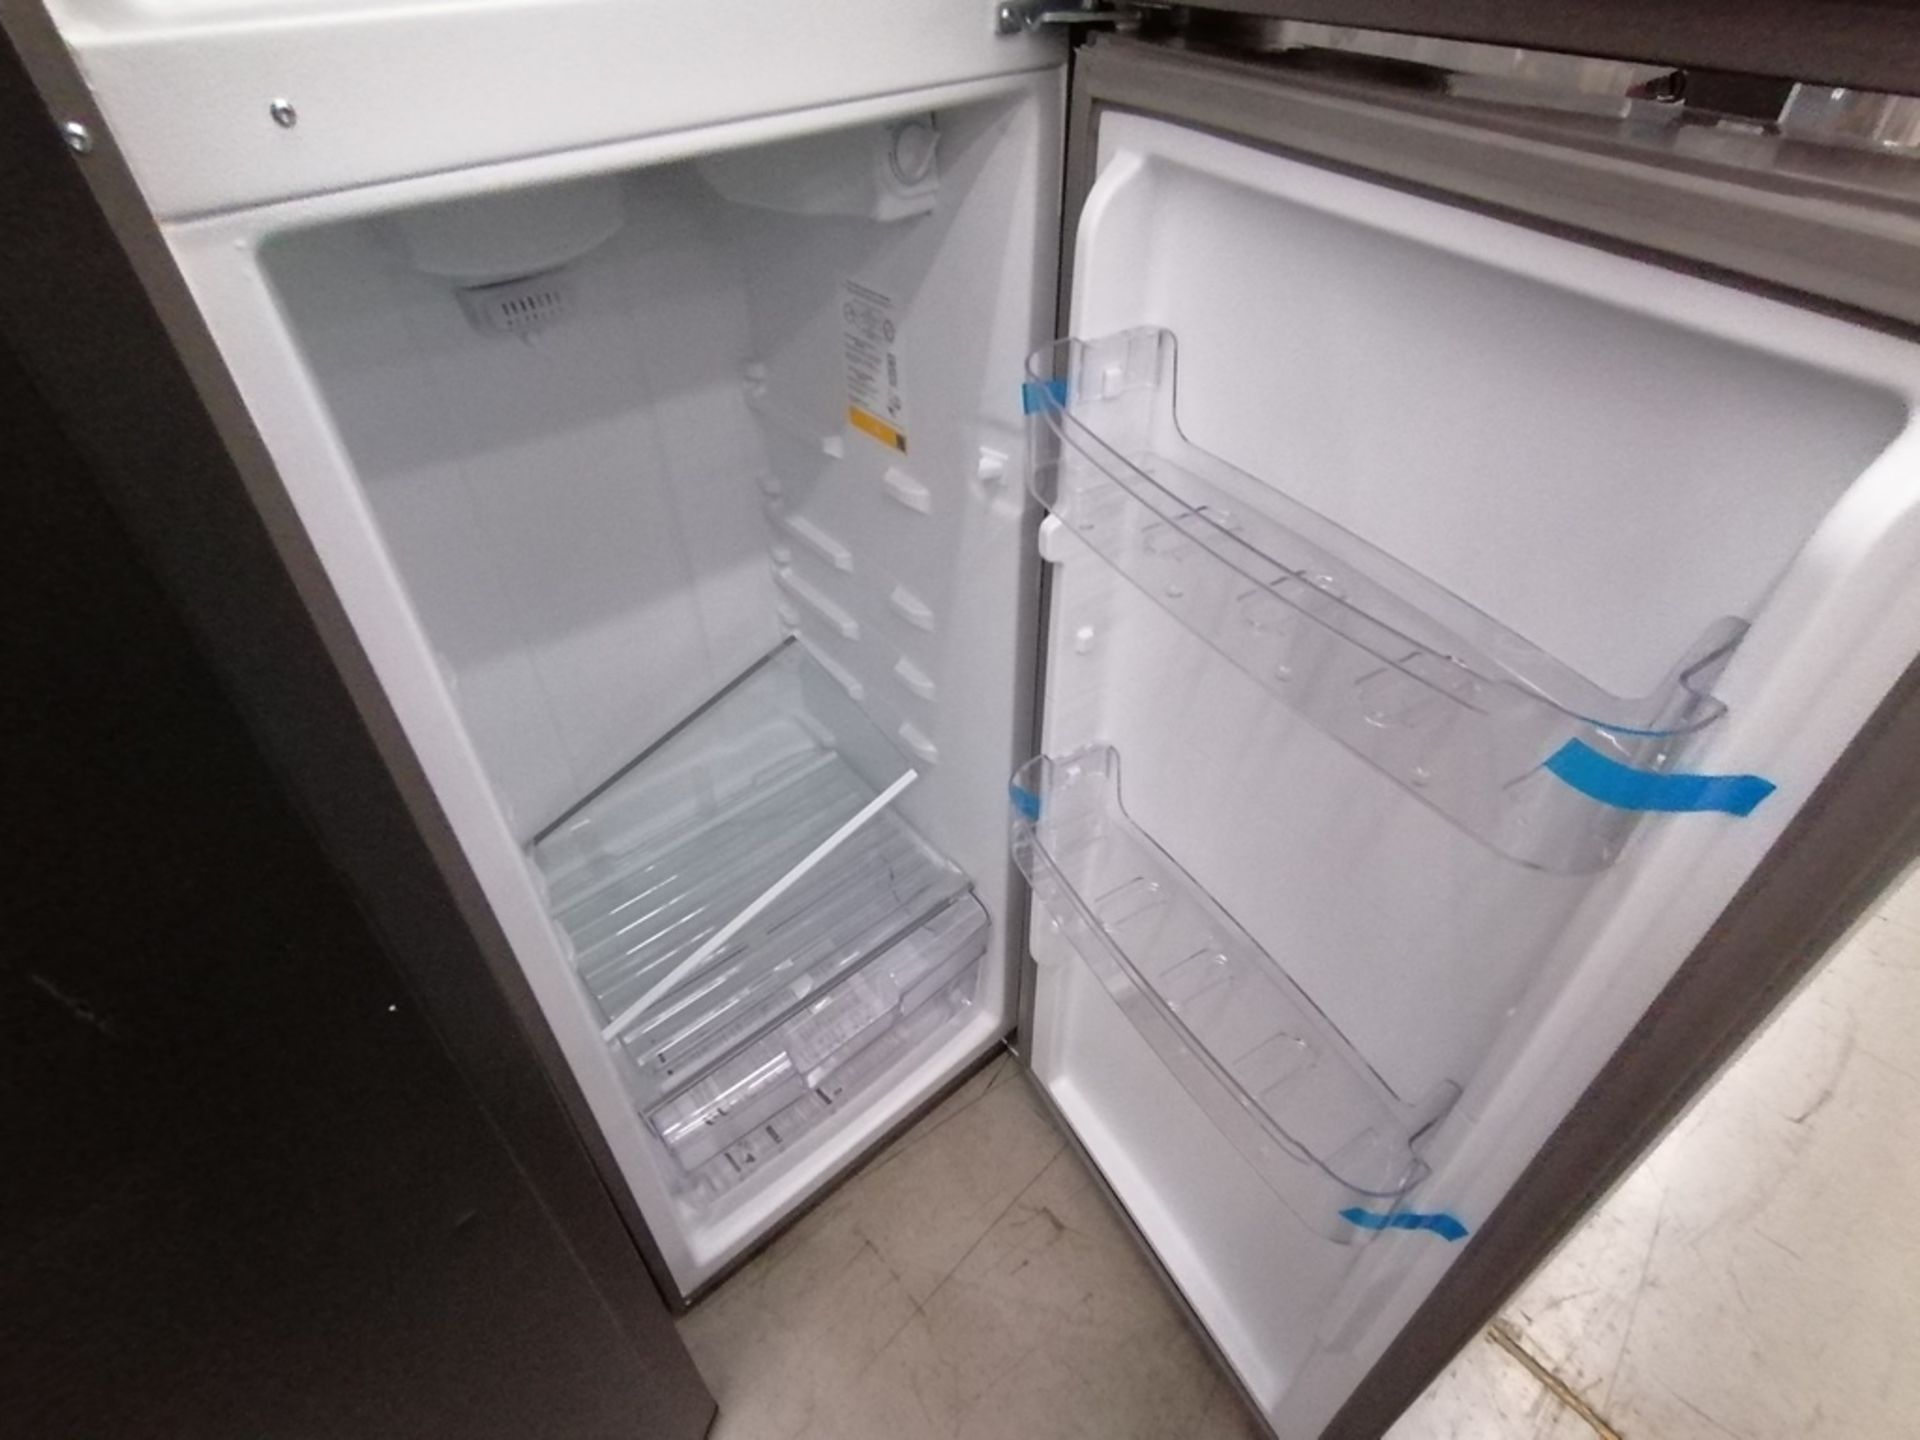 Lote de 2 refrigeradores incluye: 1 Refrigerador con dispensador de agua, Marca Mabe, Modelo RMA300 - Image 7 of 15